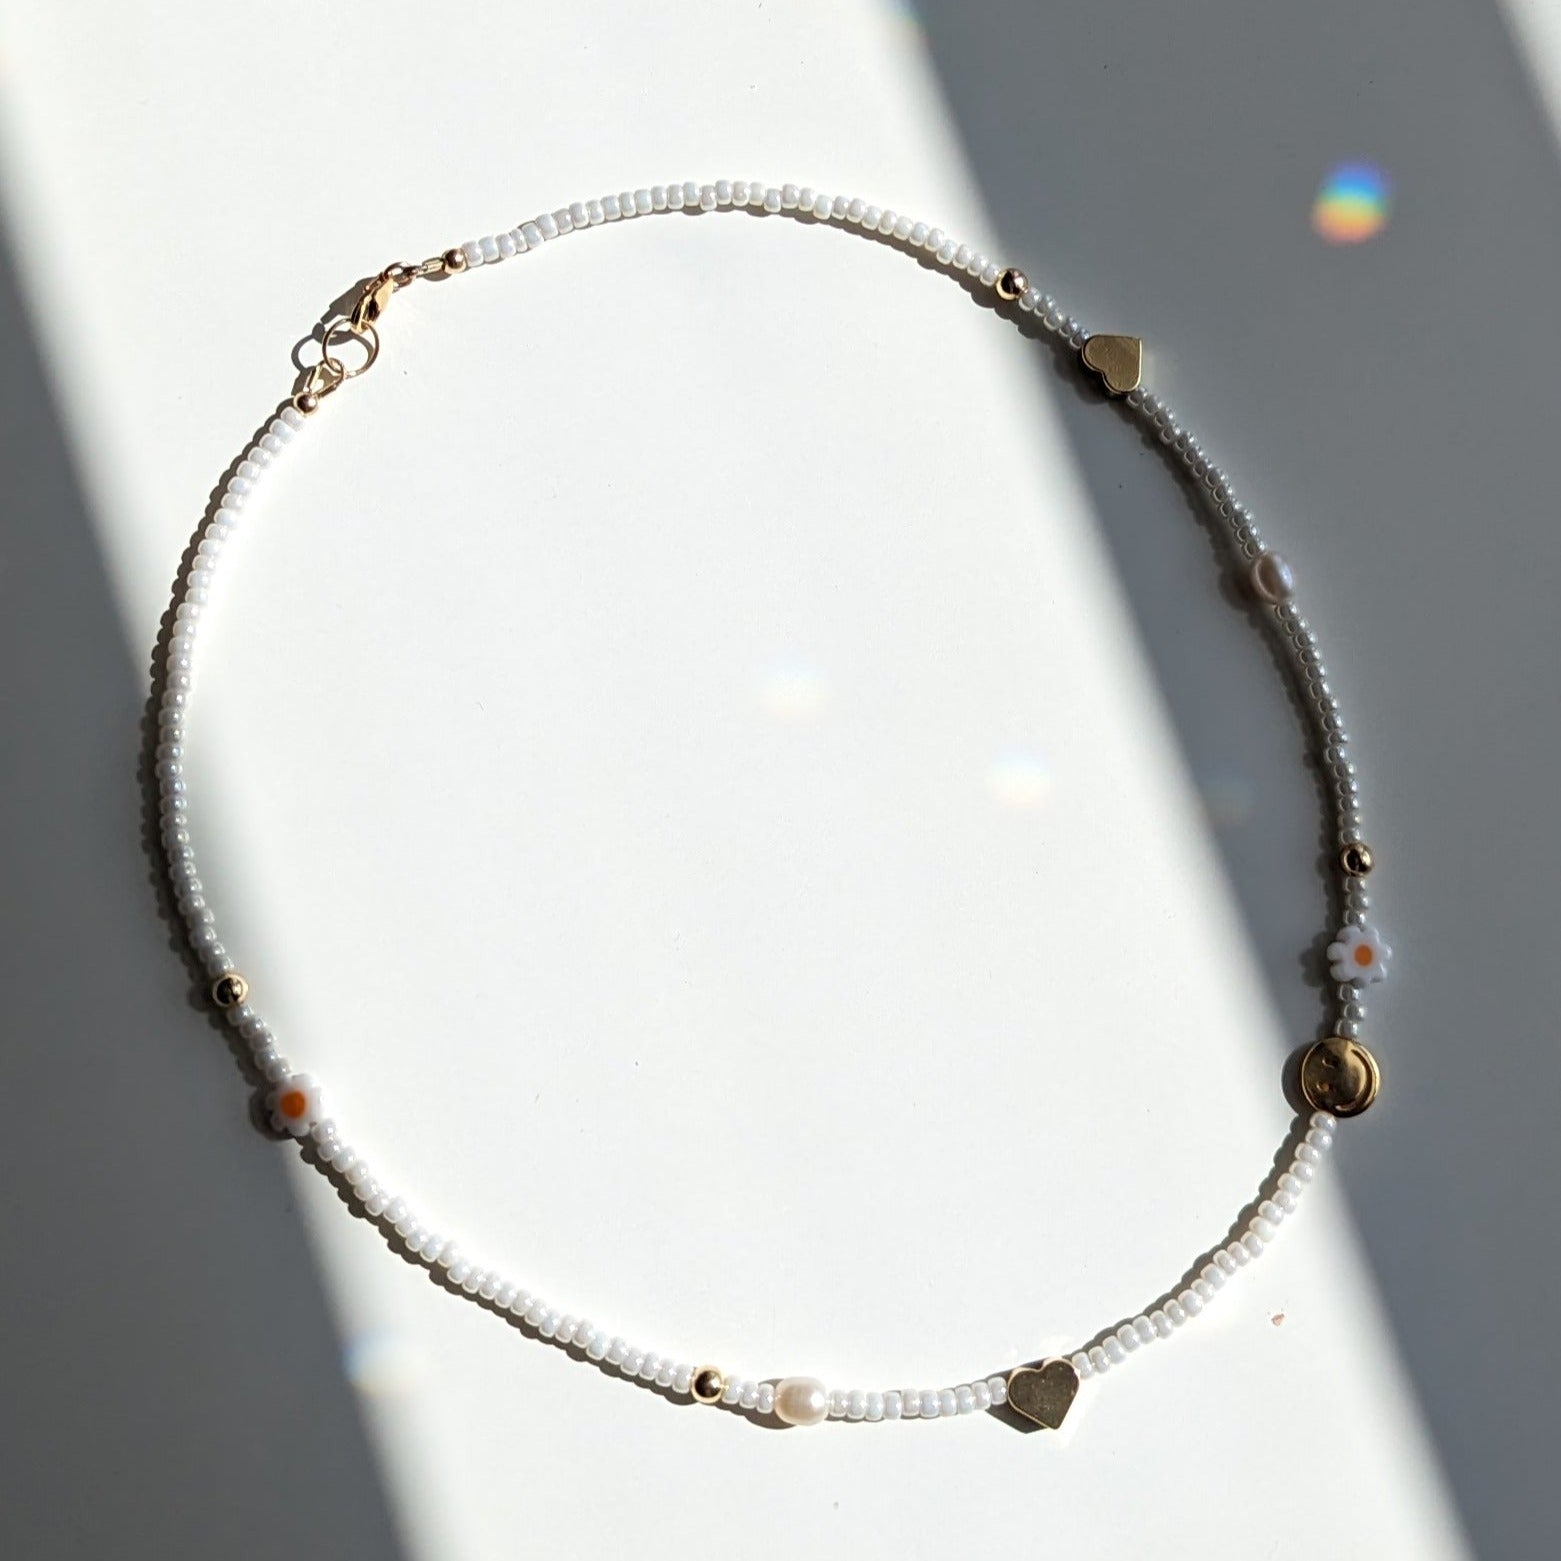 Rachel Beaded Charm Necklace | Fashion ZENZII Jewelry